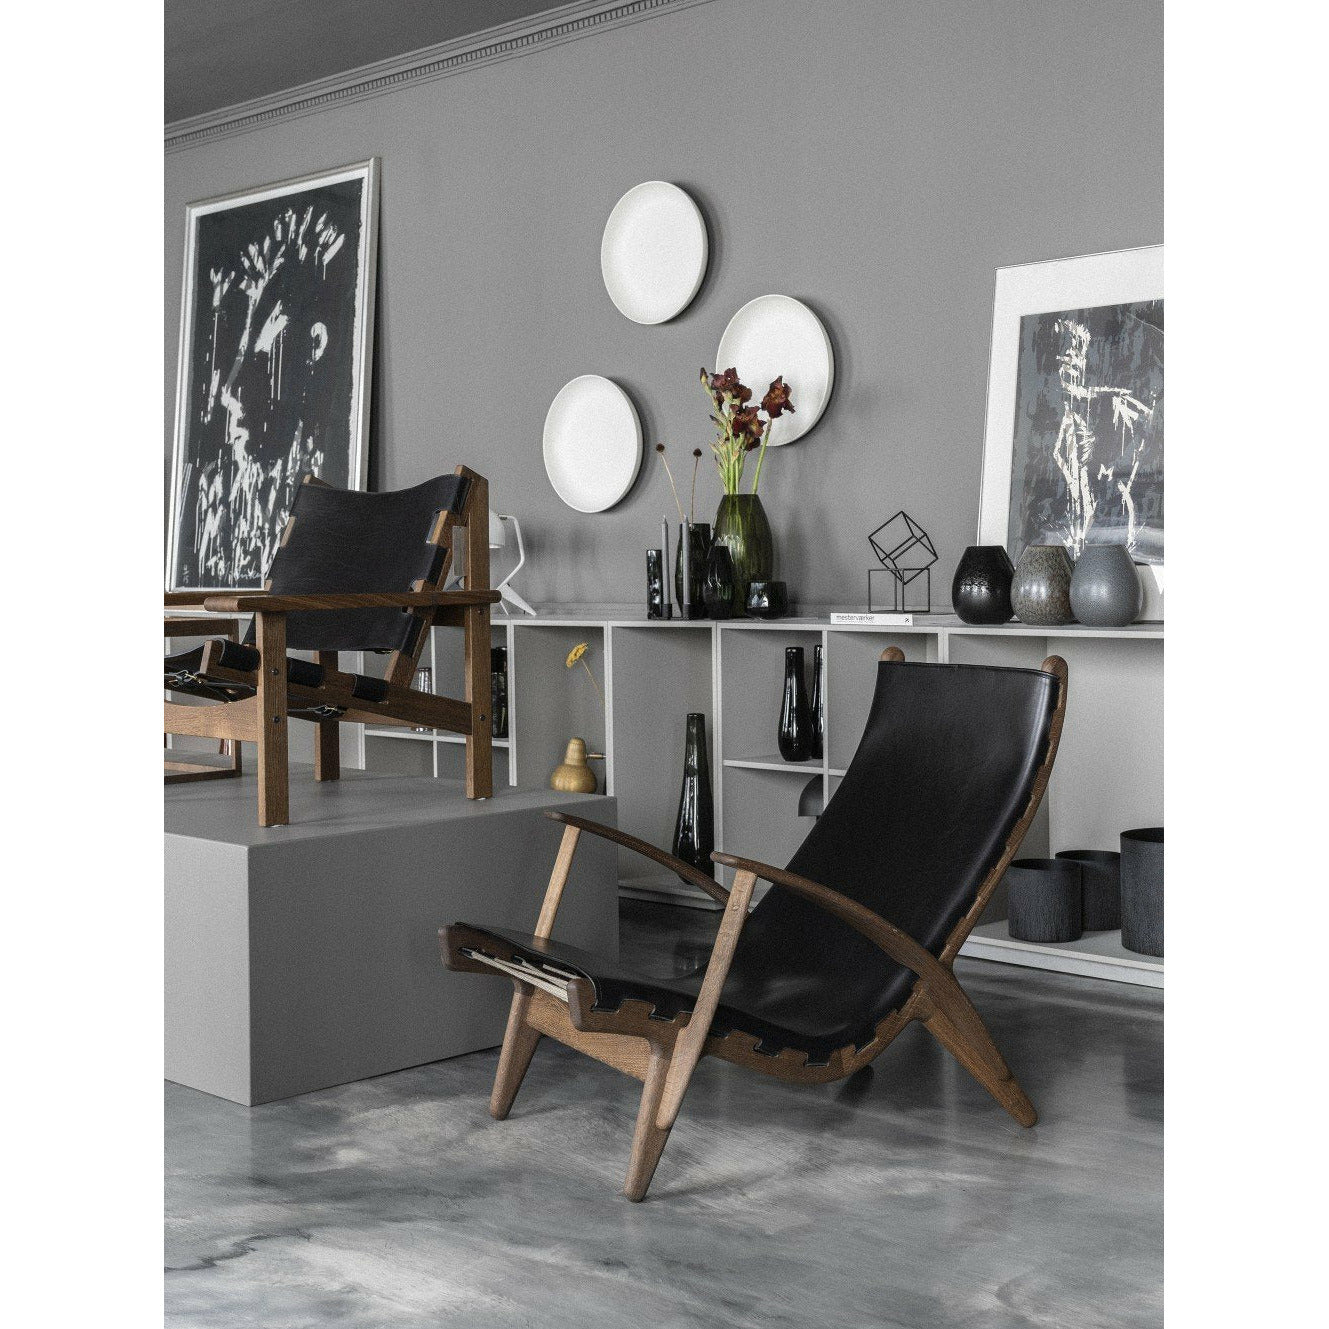 Klassik Studio PV King's Chair's Black Oak zbarvená, černá kůže